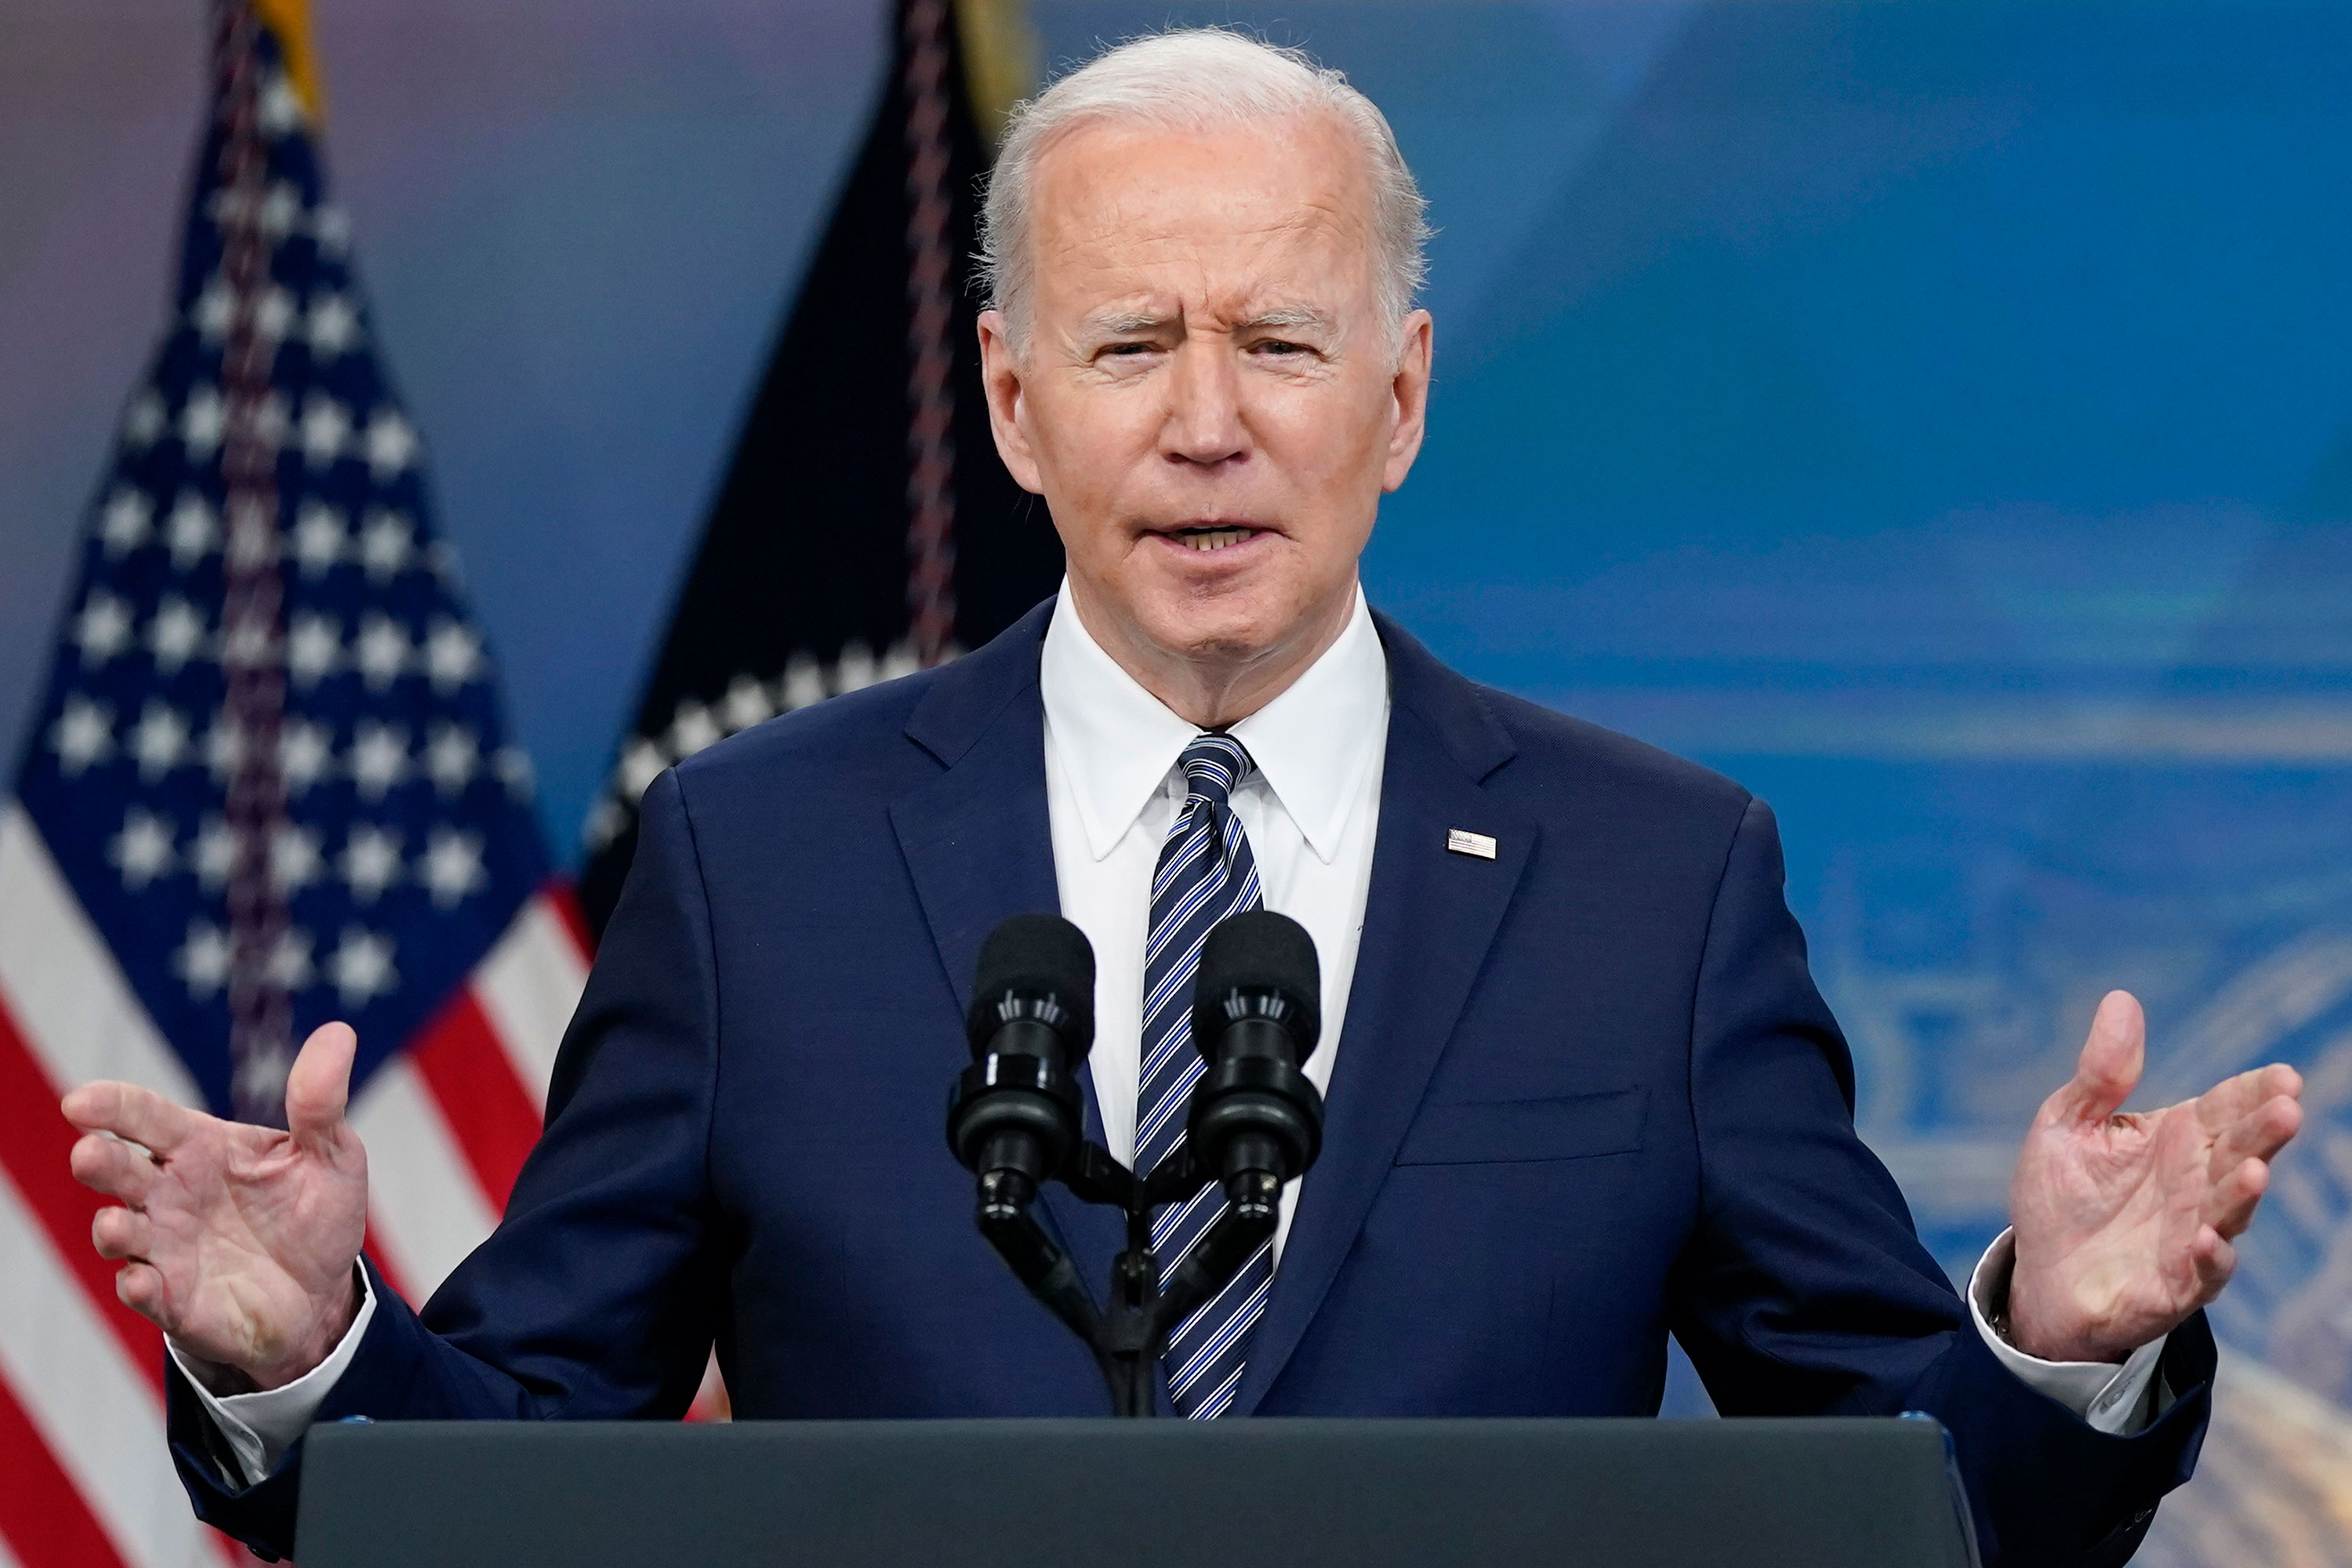 President Joe Biden speaks at the White House on Thursday.